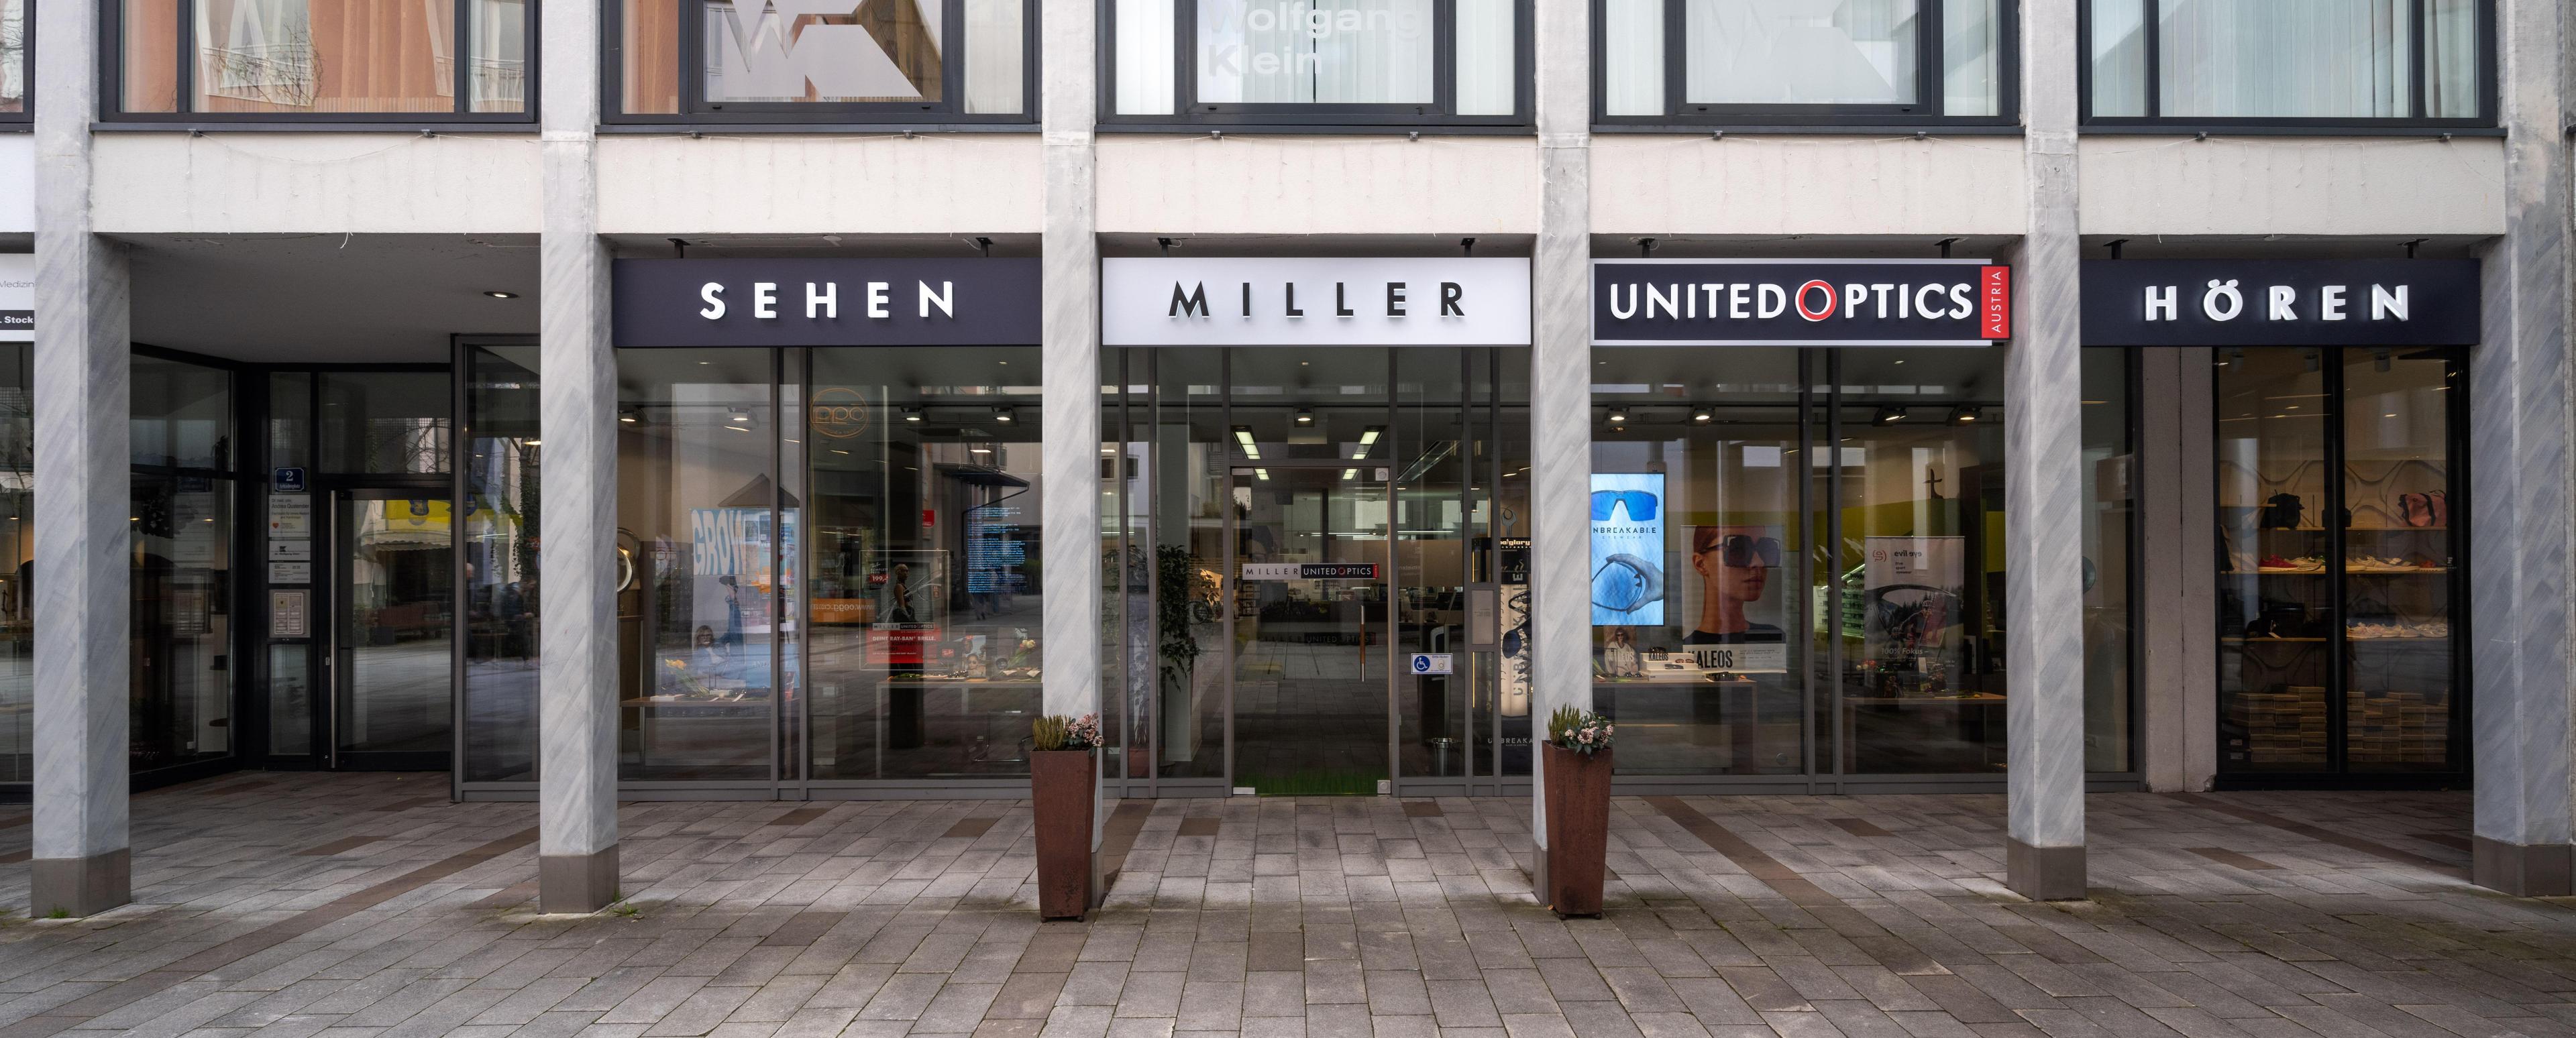 Vorschau - Foto 1 von Miller United Optics - Ihr Optiker & Hörgeräteakustiker in Kufstein (ehem. Optik Reinstaller)